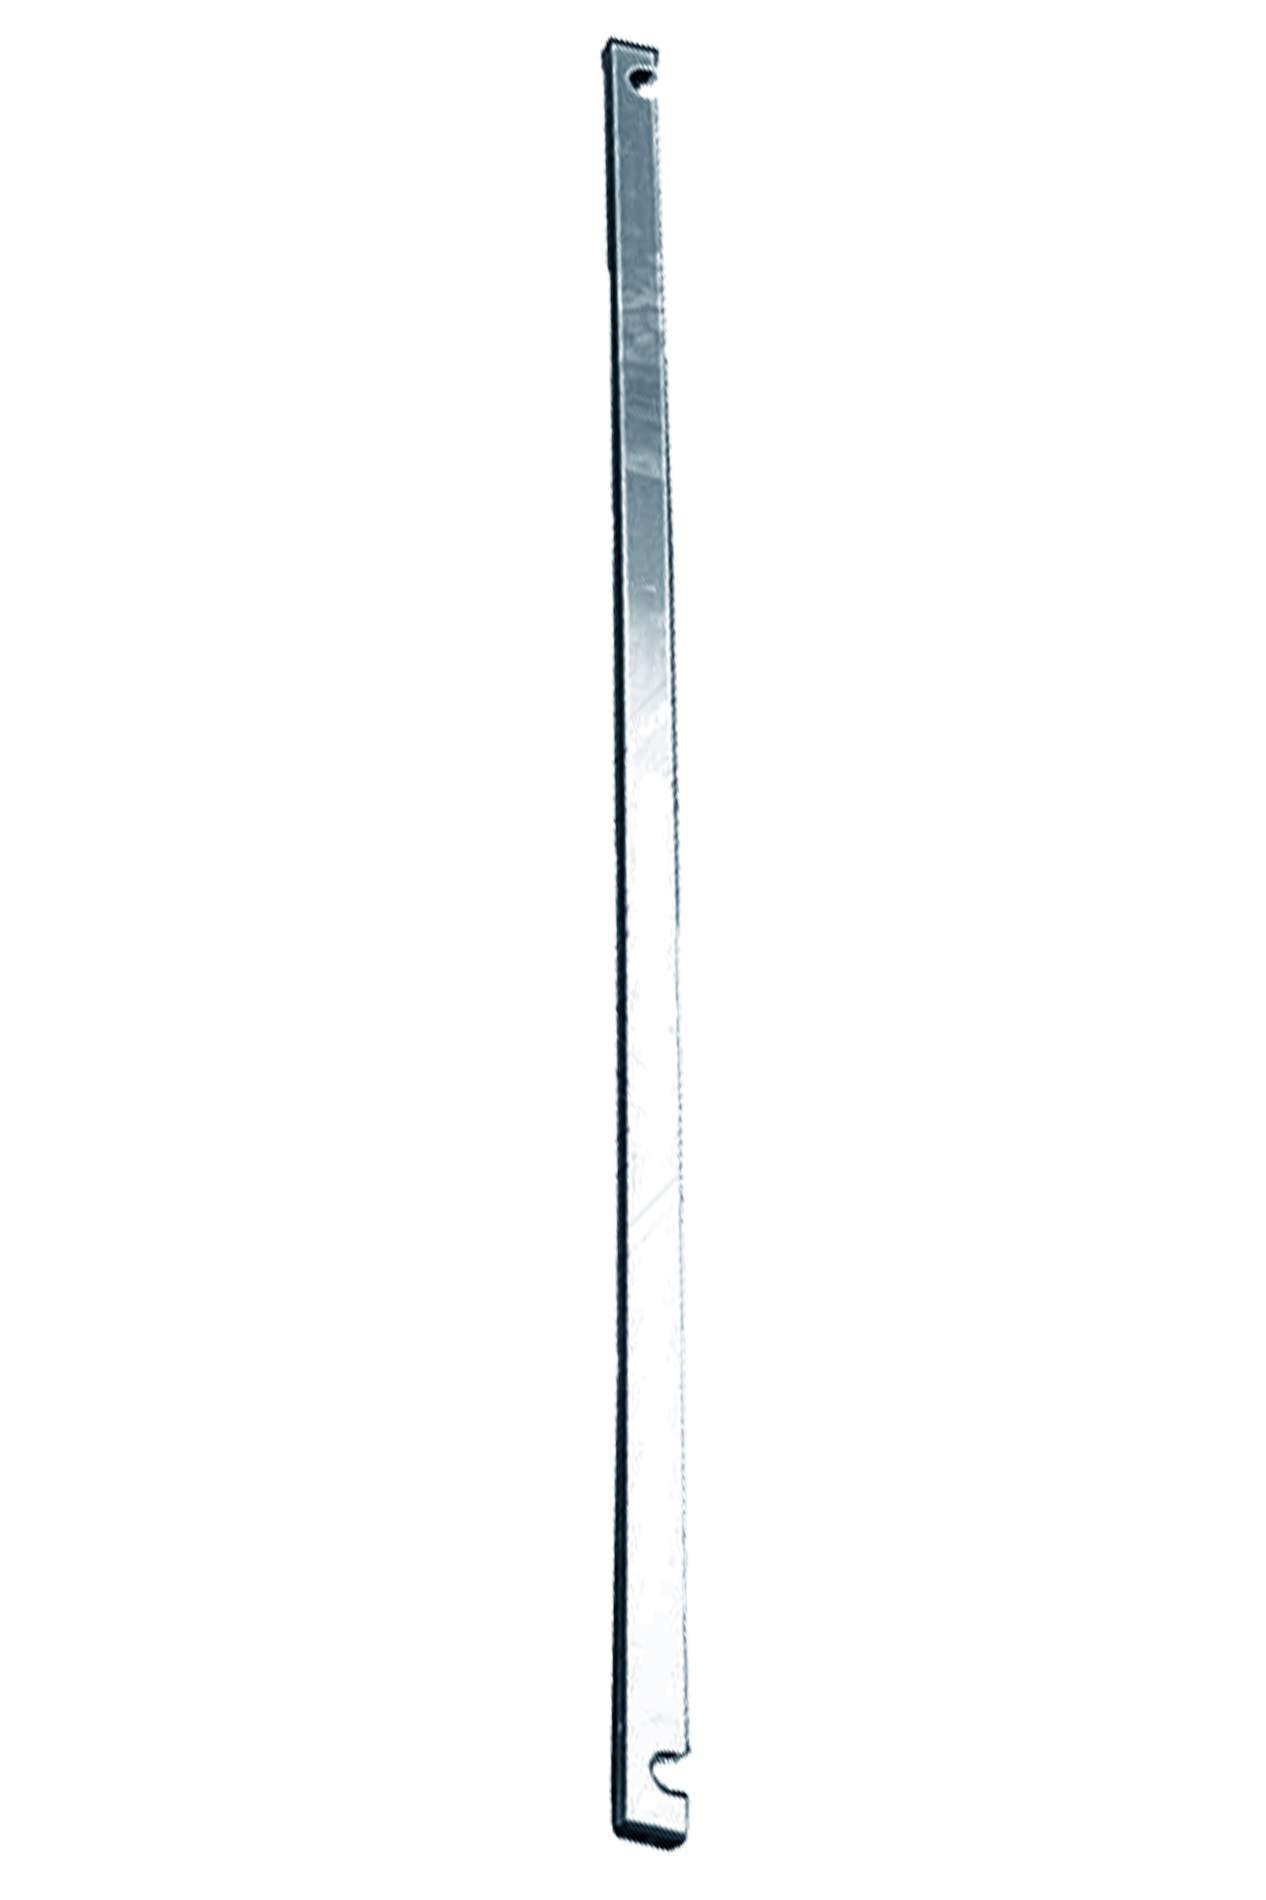 Дополнительное изображение Вышка-тура STABILO серия 10 рабочая высота 8,3 м, размер площадки (2.5х0.75 м)